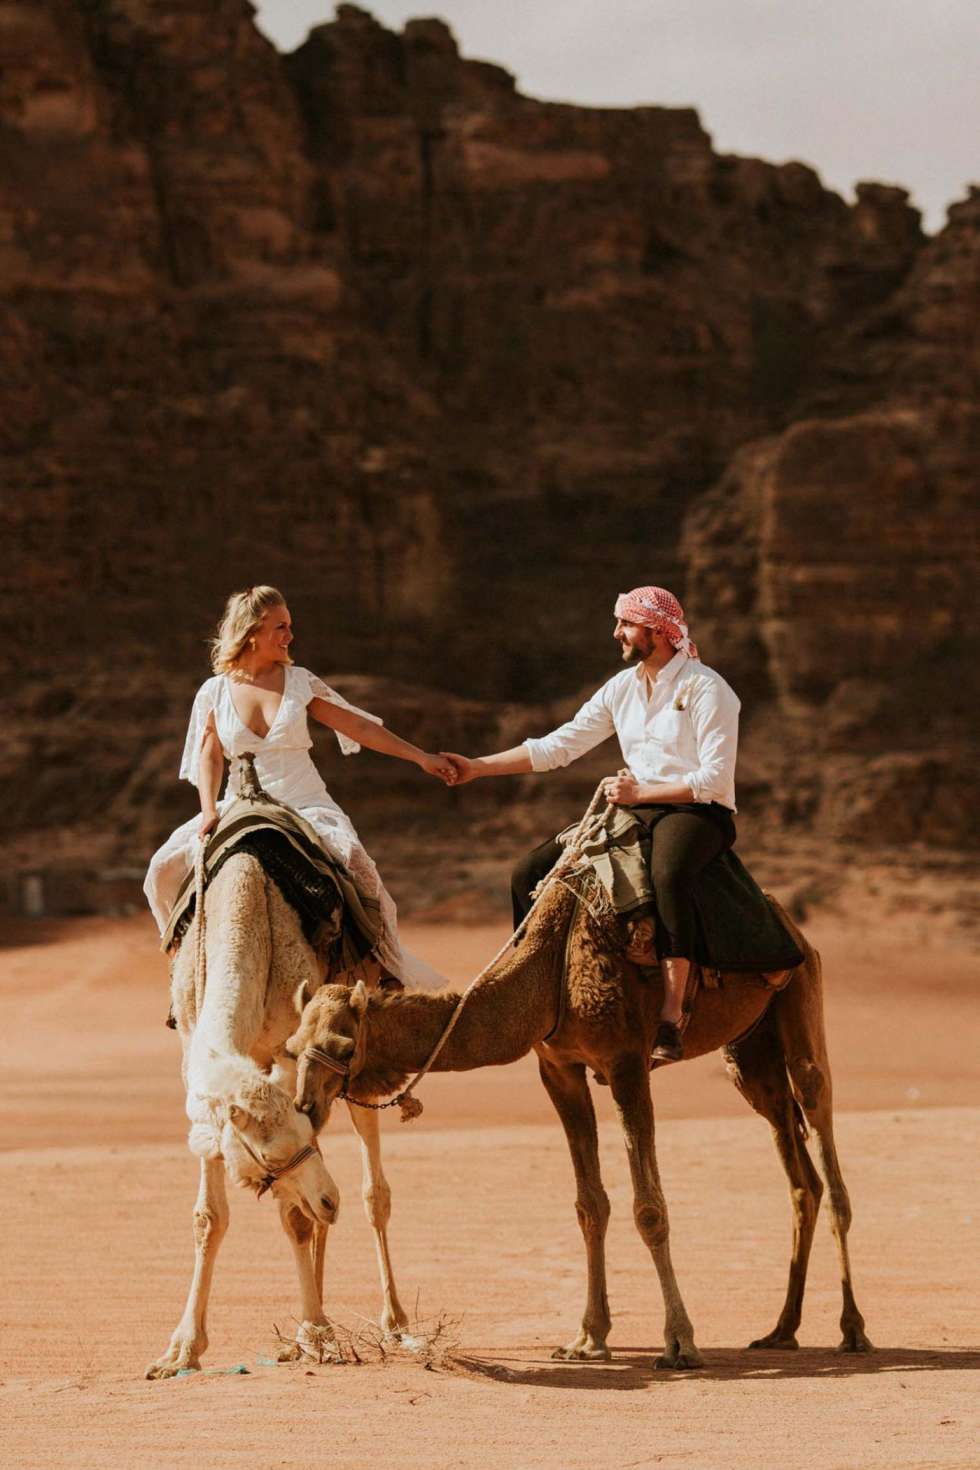 Weddings at Wadi Rum 